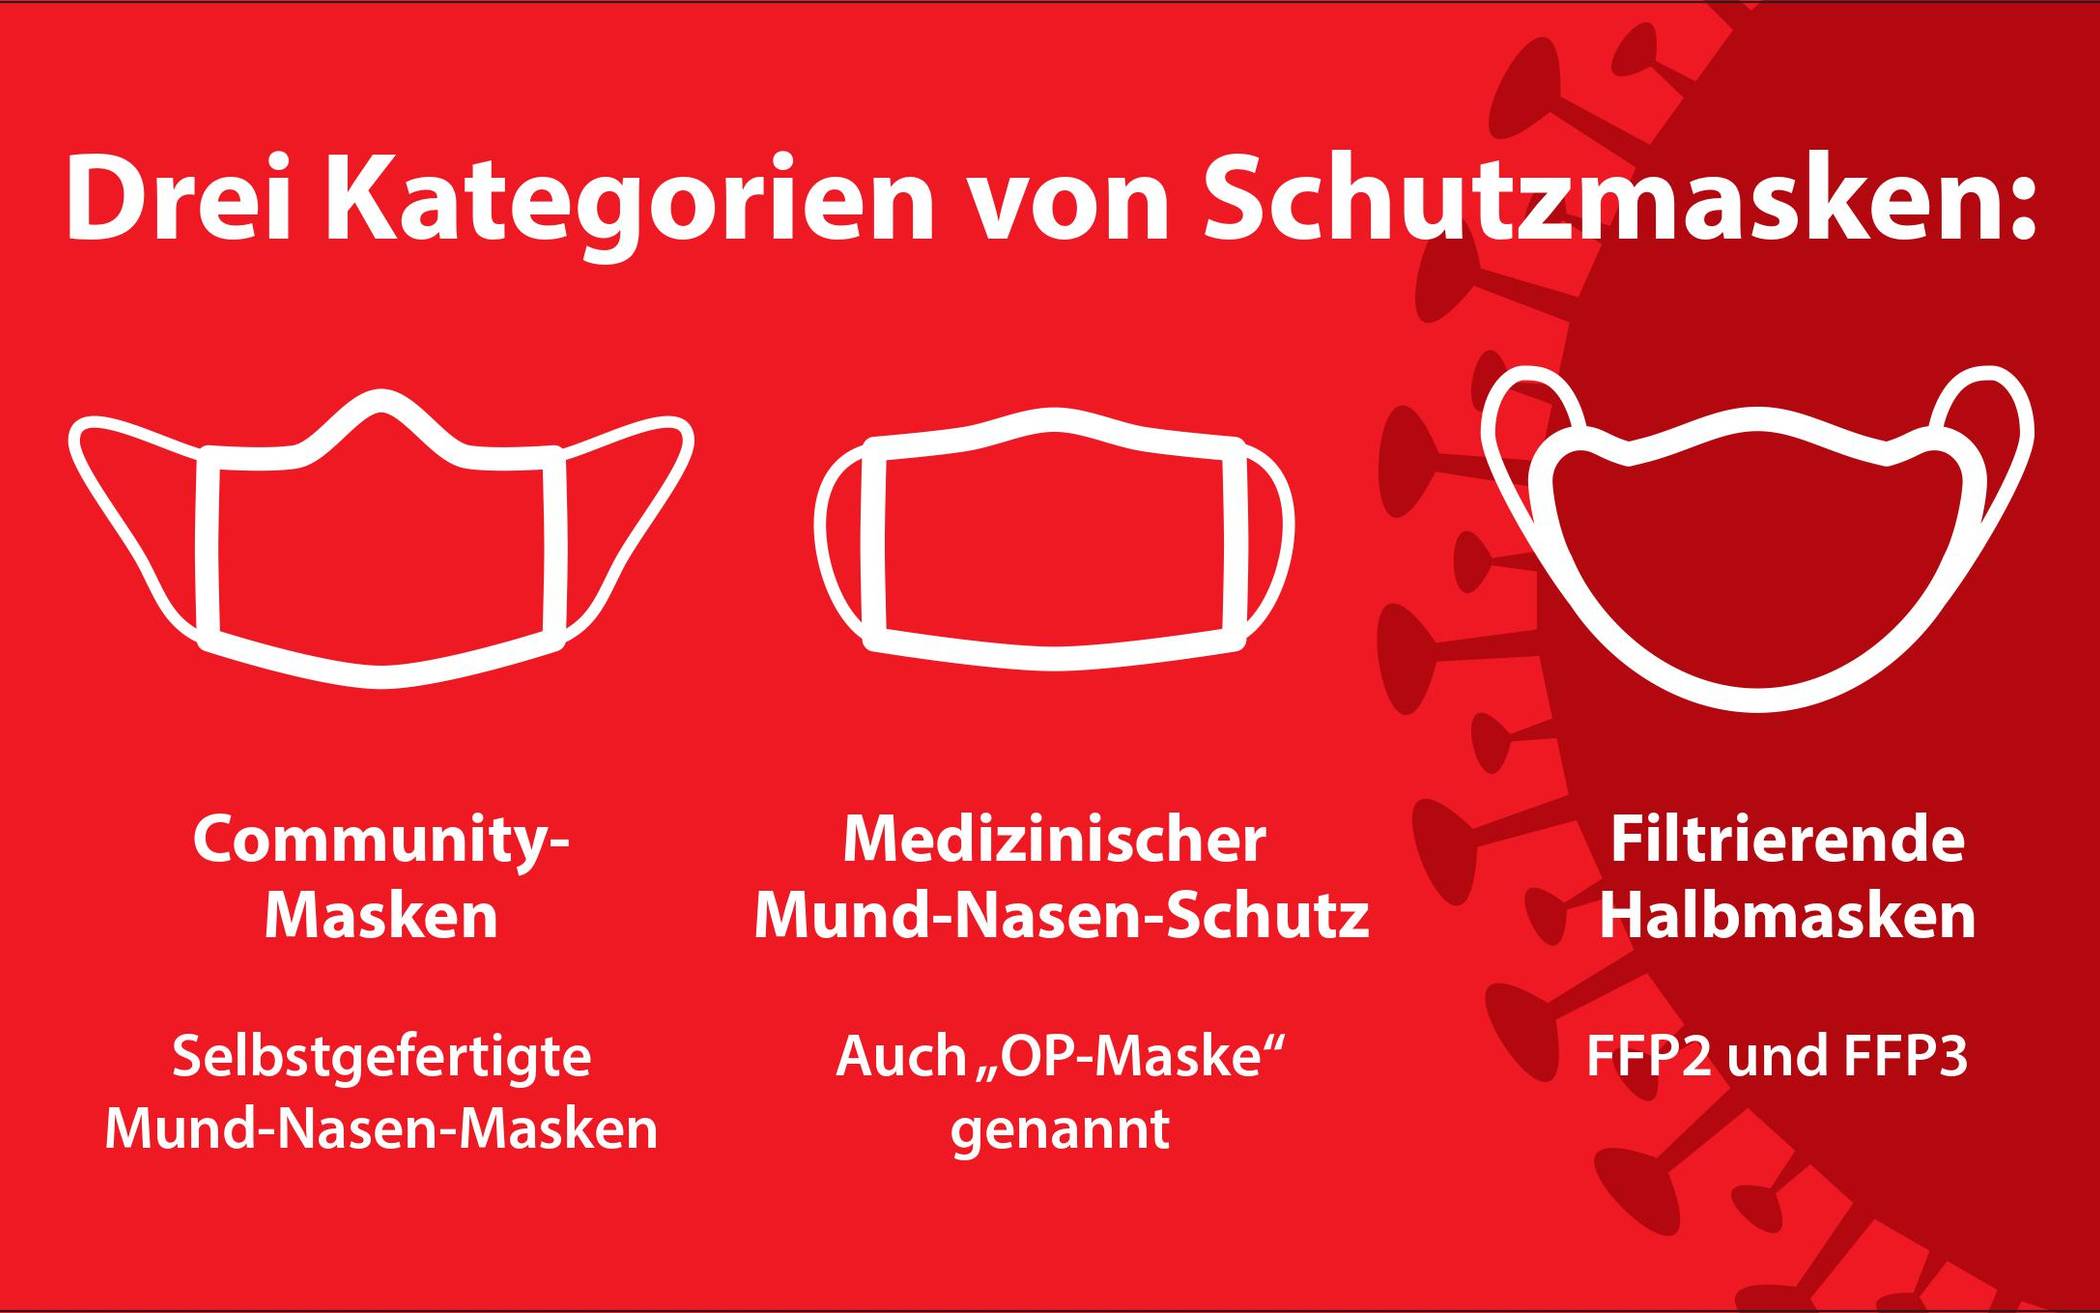 Apotheken in Wuppertal beraten zum richtigen Umgang mit Schutzmasken